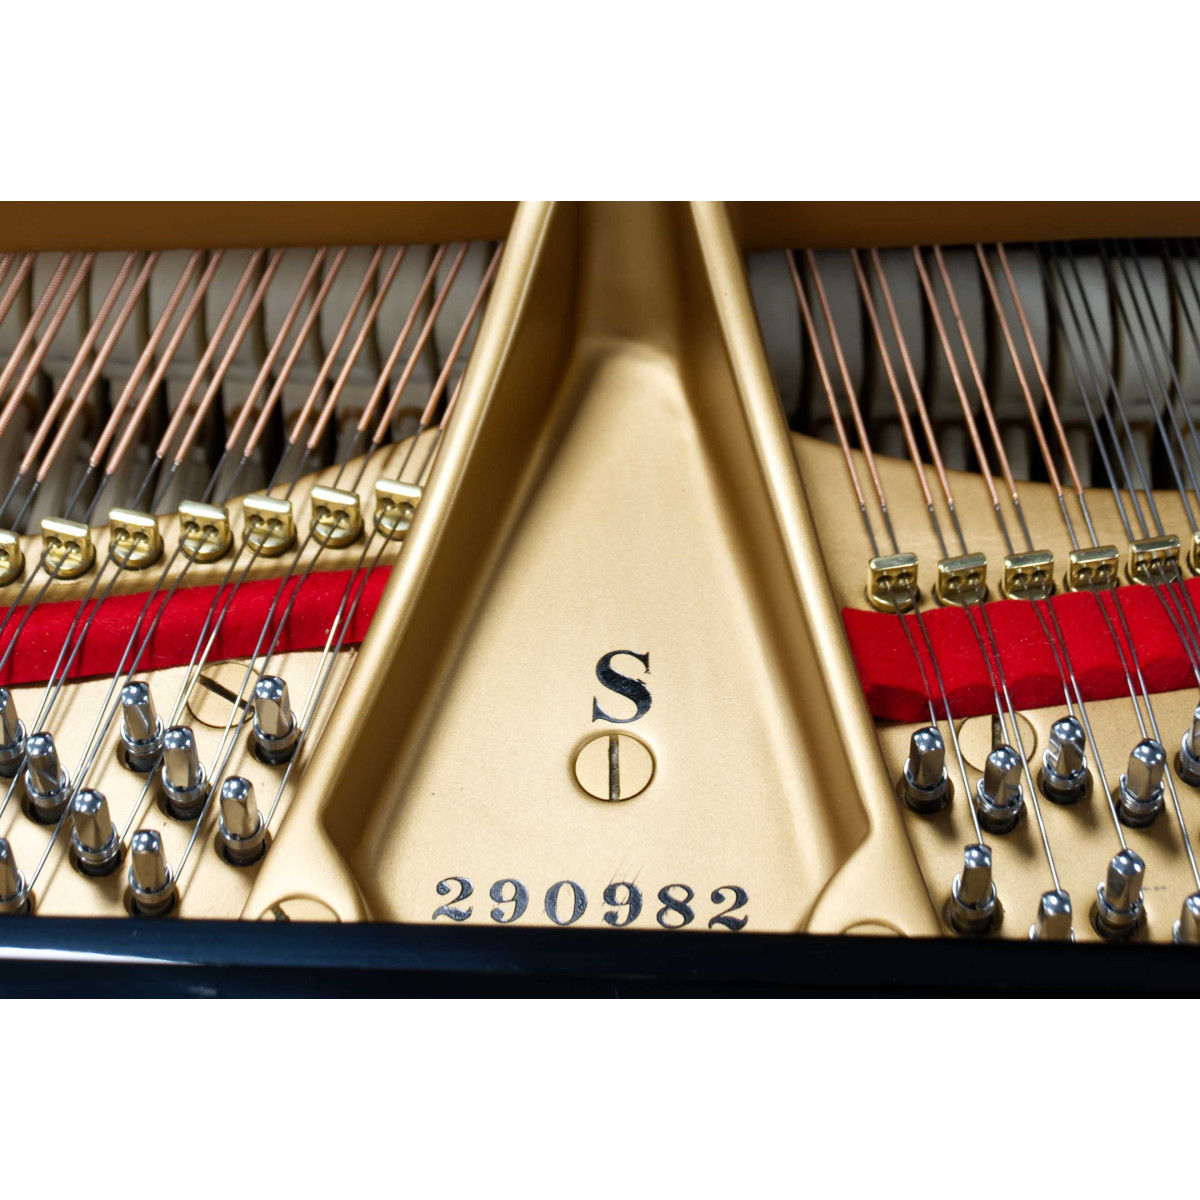 Steinway & Sons, Modell S-155 gebraucht kaufen Pianelli, Ansicht: Seriennummer